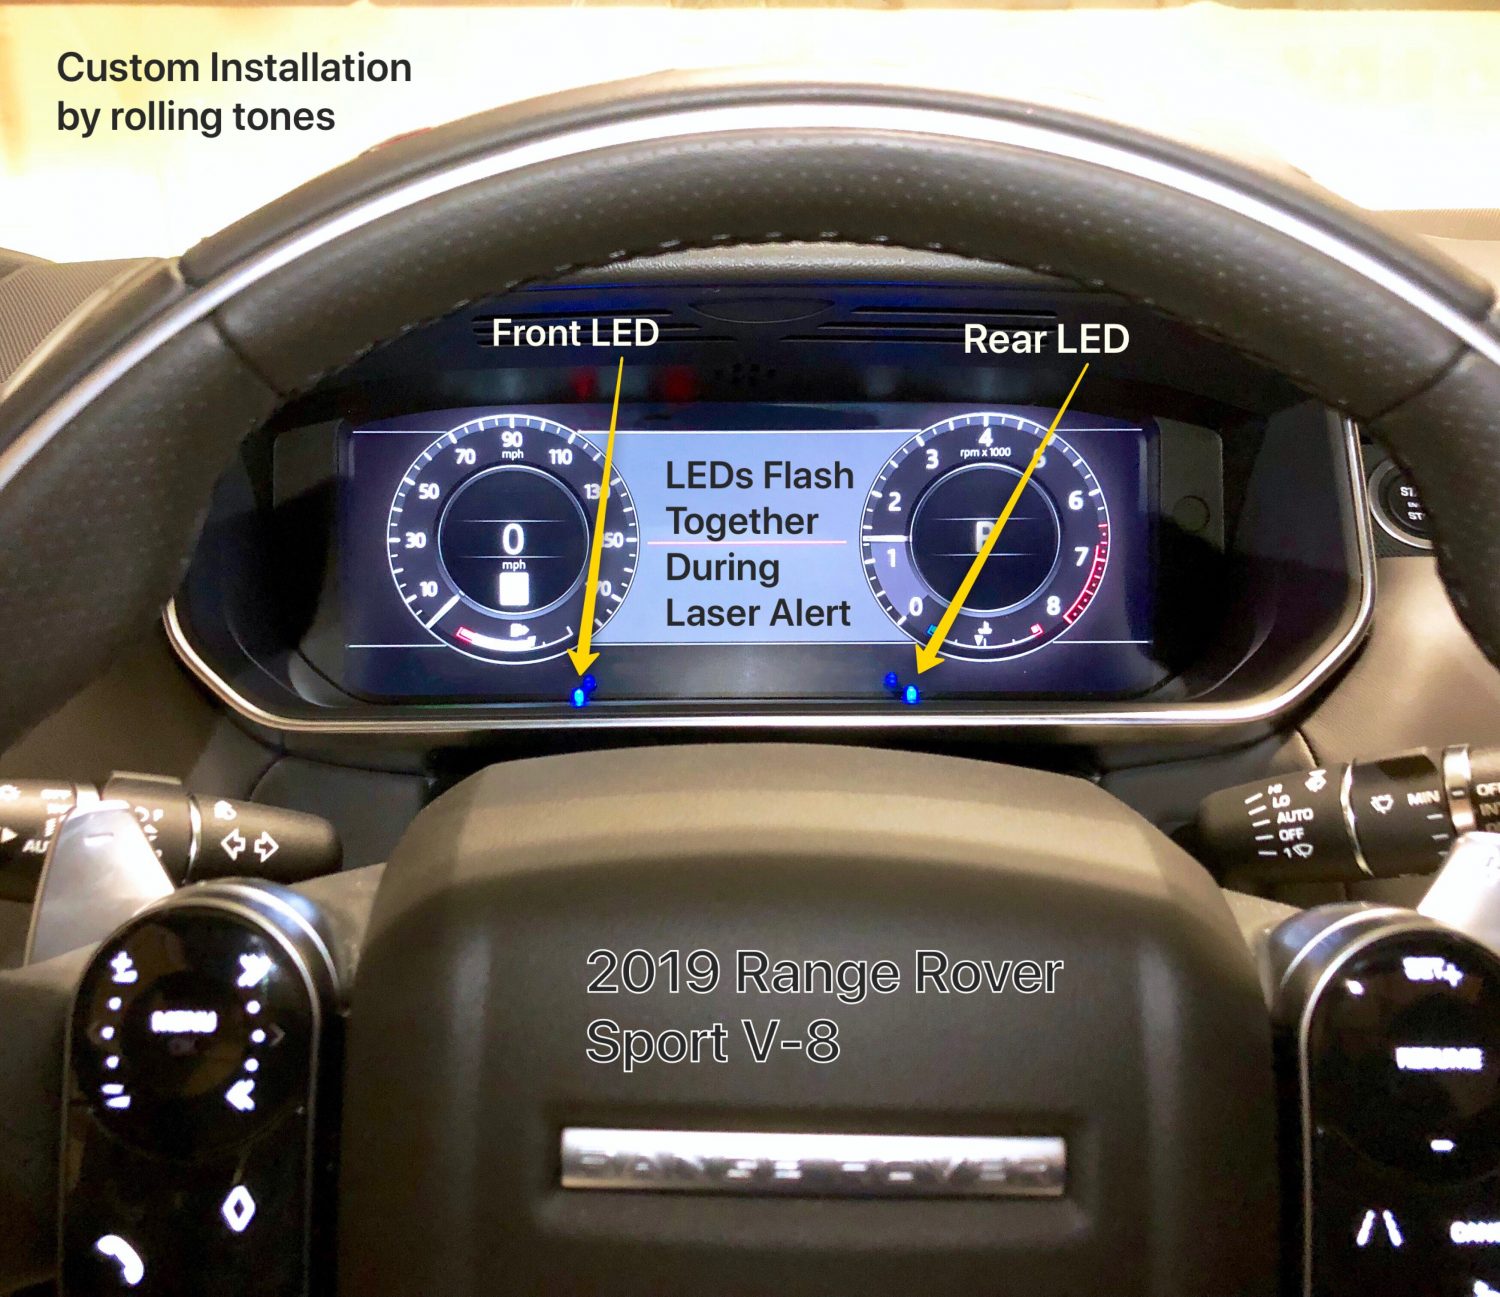 Custom K40 Police Radar Detector Alert LED's Installed on 2019 Range Rover Sport in Charlotte, NC